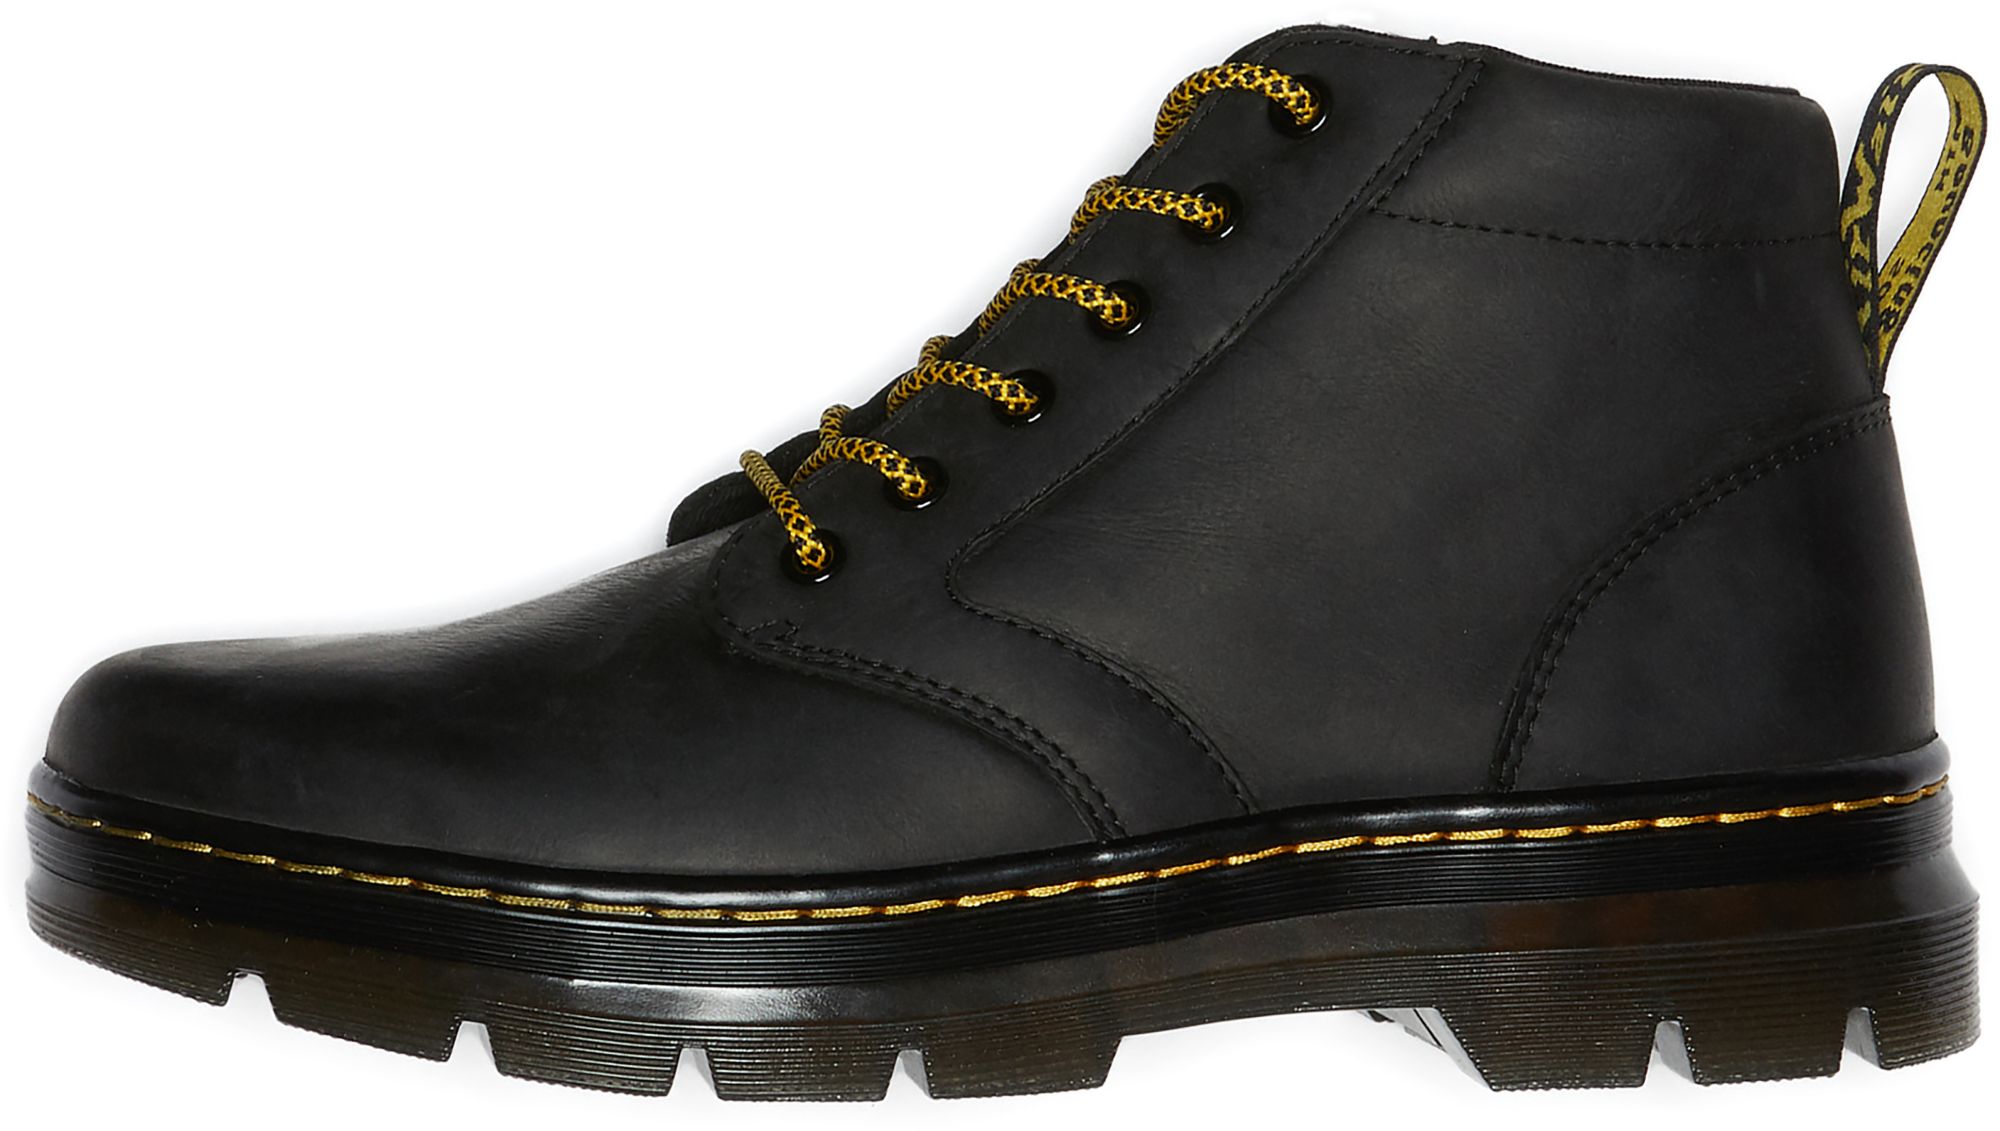 Dr. Martens Men's Bonny Leather Casual Boots